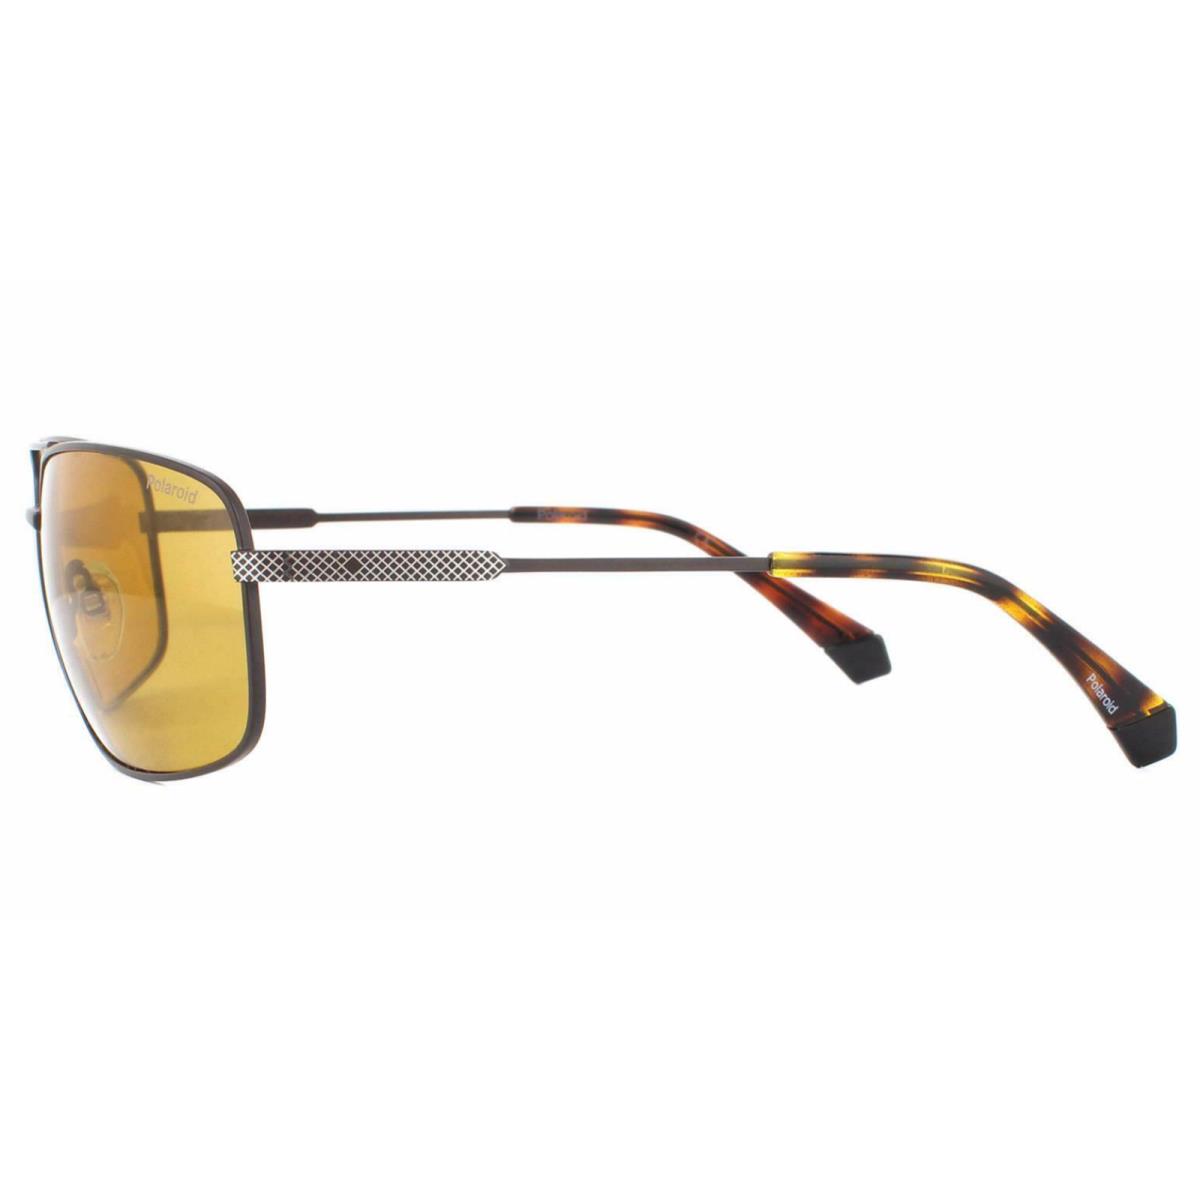 Polaroid sunglasses PDL - Matte Brown & Tortoise Frame, Light Yellow Polarized Lens